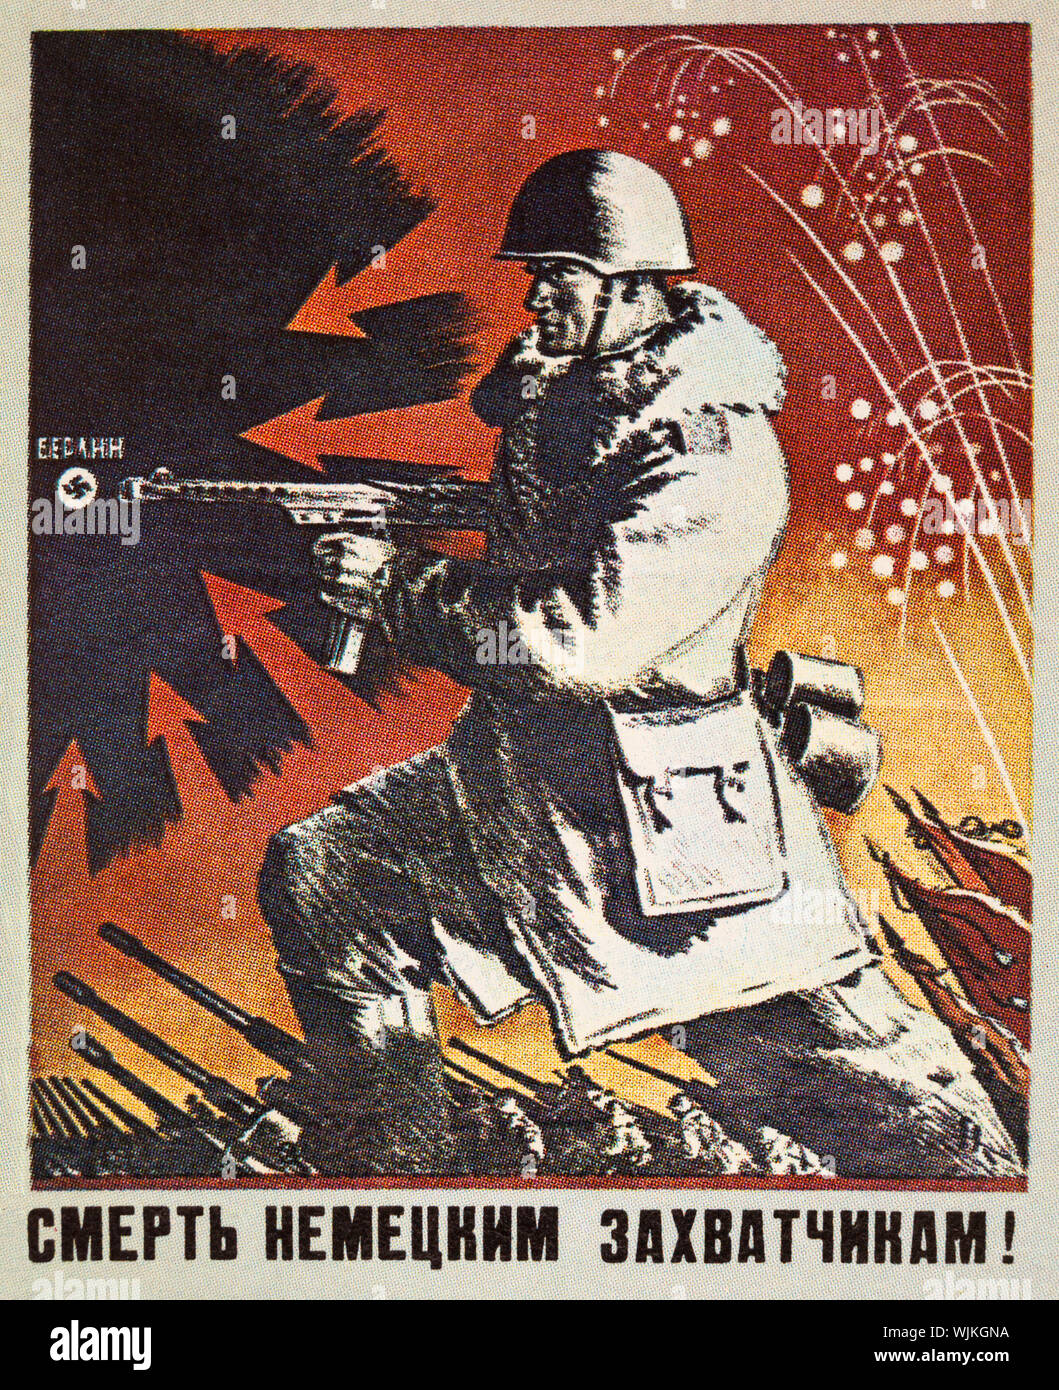 Une fédération ou Union Soviétique de la Seconde Guerre mondiale affiche de propagande doté d''un soldat de l'Armée rouge que lui et ses collègues ont attaqué les troupes qu'ils ont attaqué Berlin en 1945. La légende dit "mort aux envahisseurs allemands'. Banque D'Images